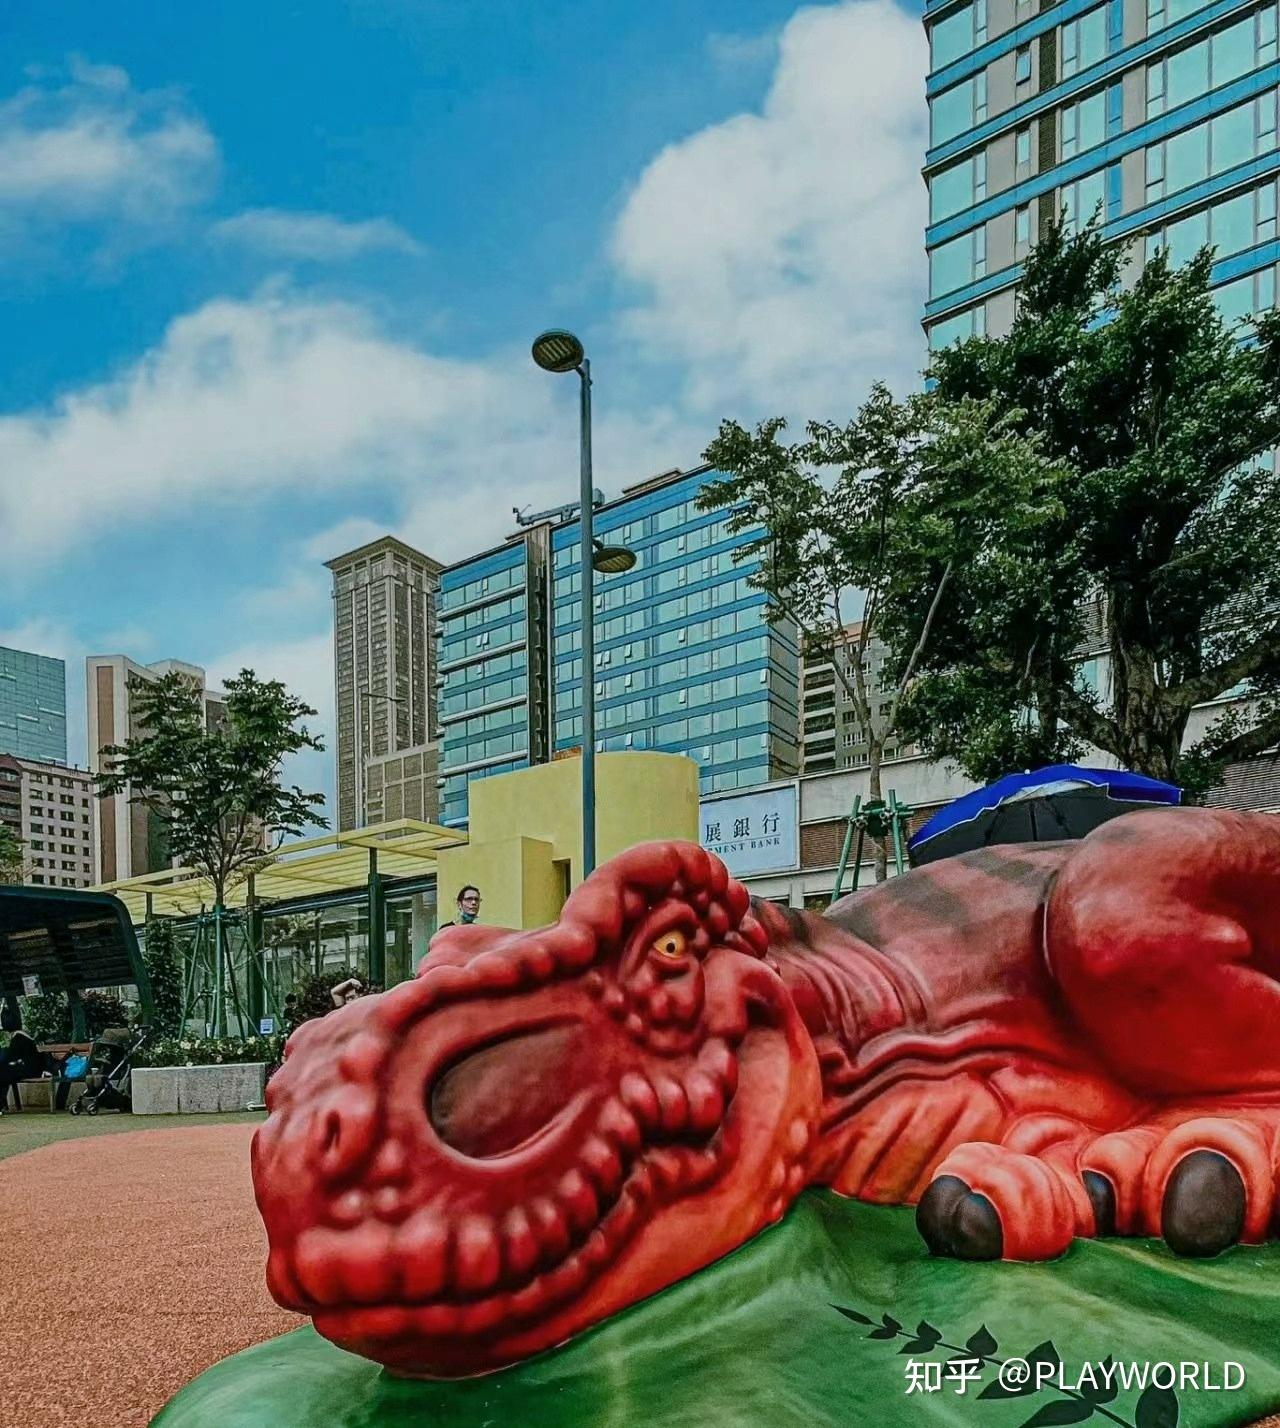 佑汉街市公园2儿童游乐场完成优化重开 – 澳门特别行政区政府入口网站